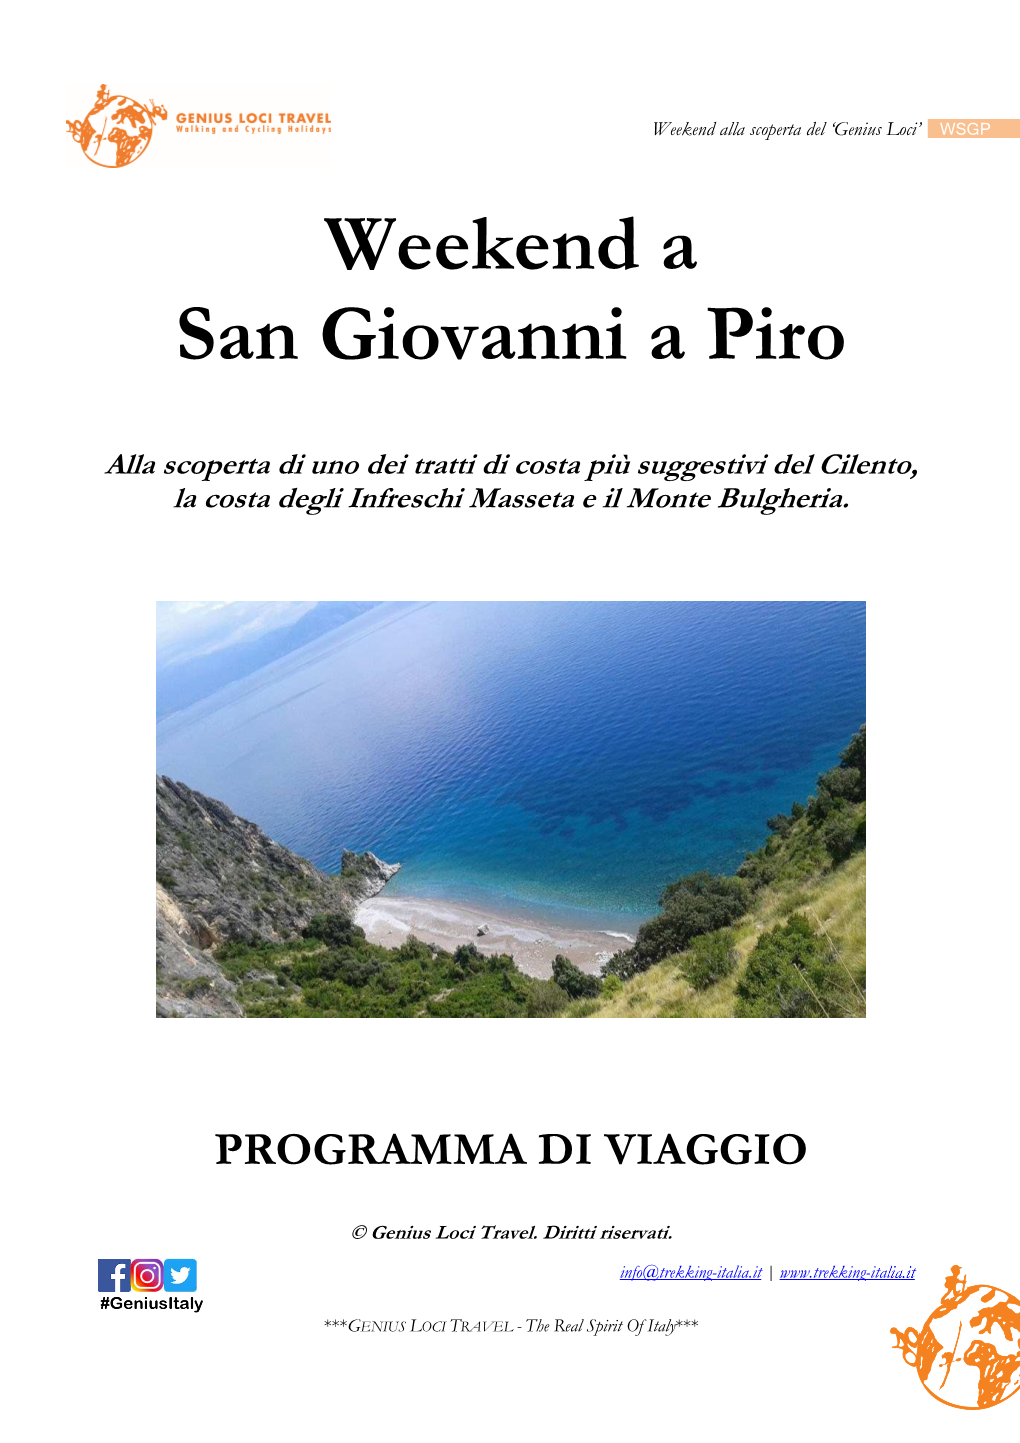 Weekend San Giovanni a Piro